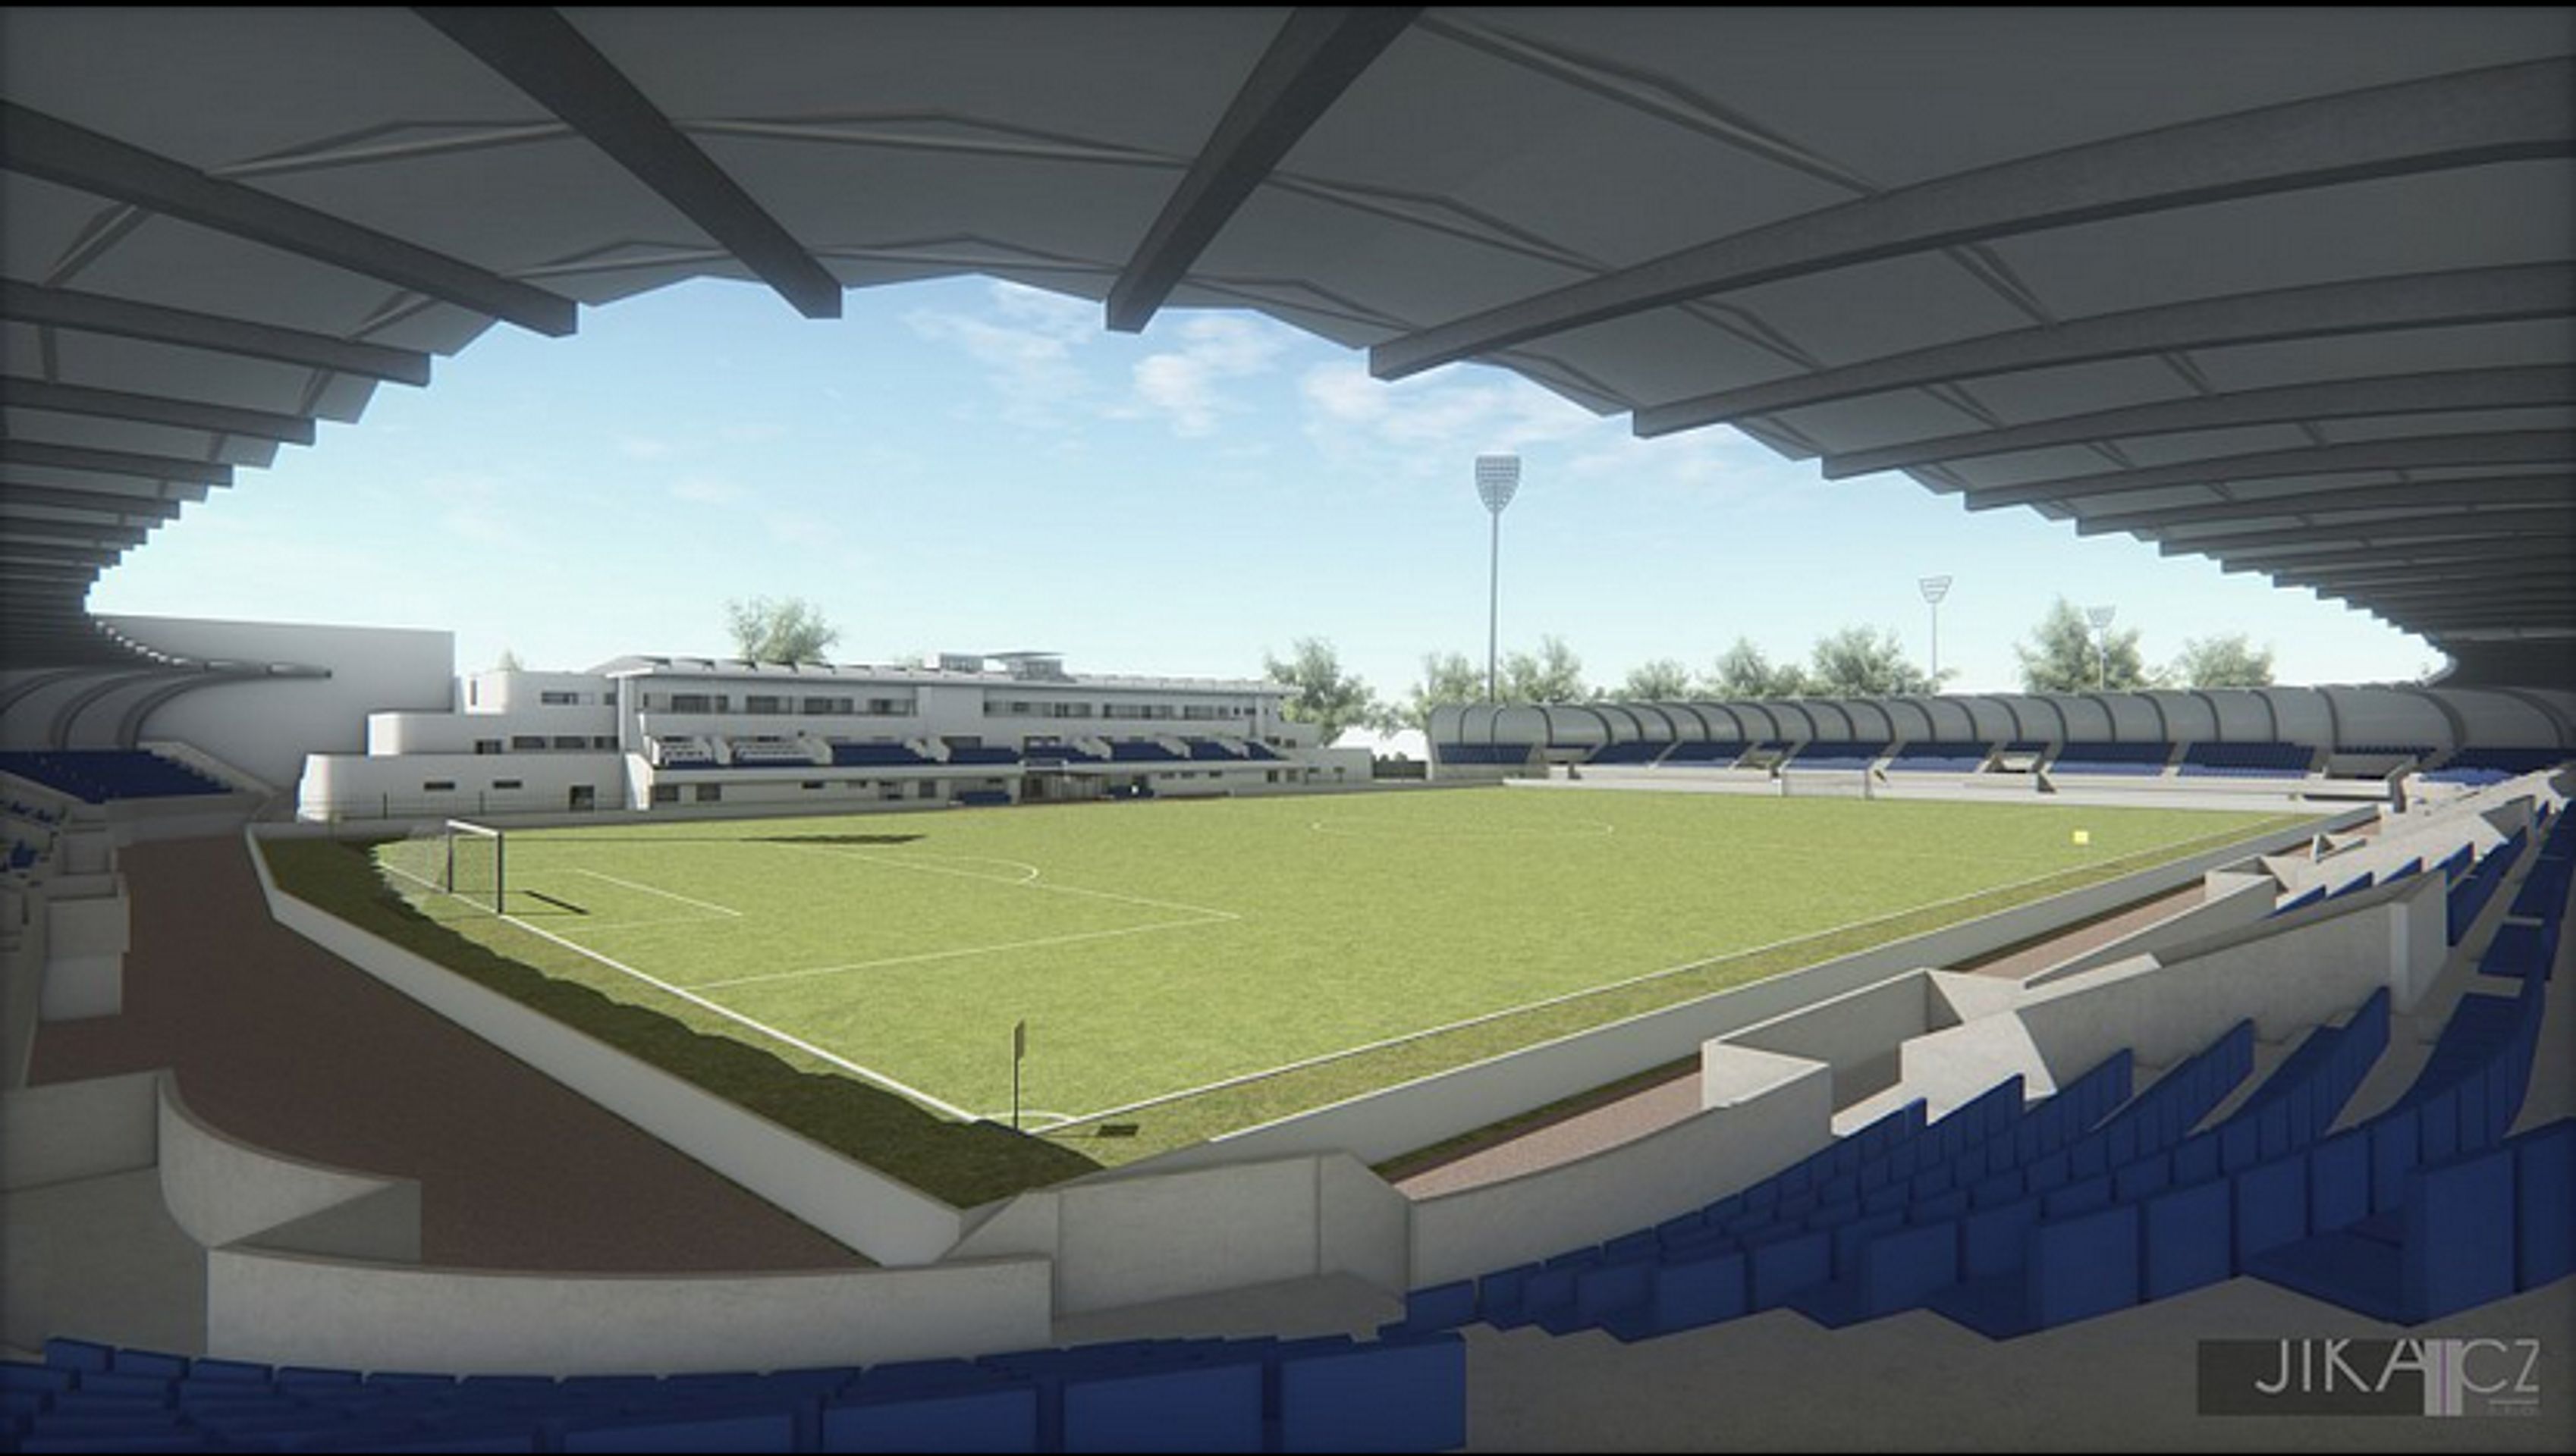 Takhle by měl vypadat nový fotbalový stadion v Pardubicích - GALERIE: Vizualizace nového stadionu v Pardubicích (4/4)